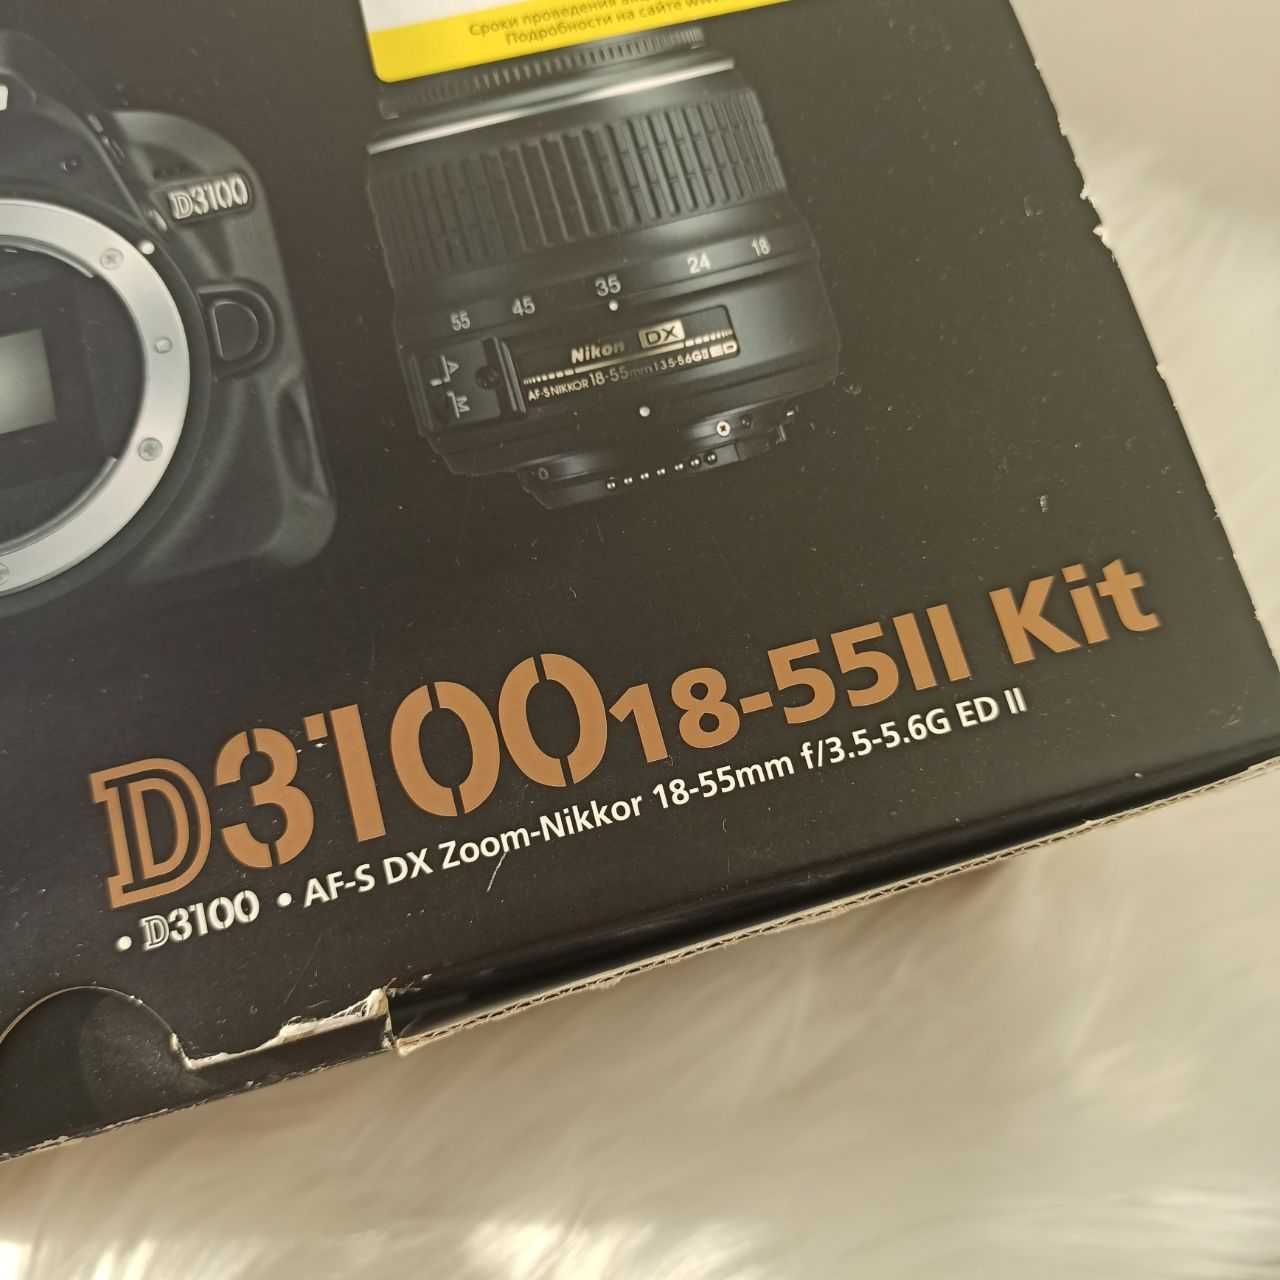 Продам Фотоаппарат Nikon D3100 Kit AF-S DX NIKKOR 18-55mm f/3.5-5.6G